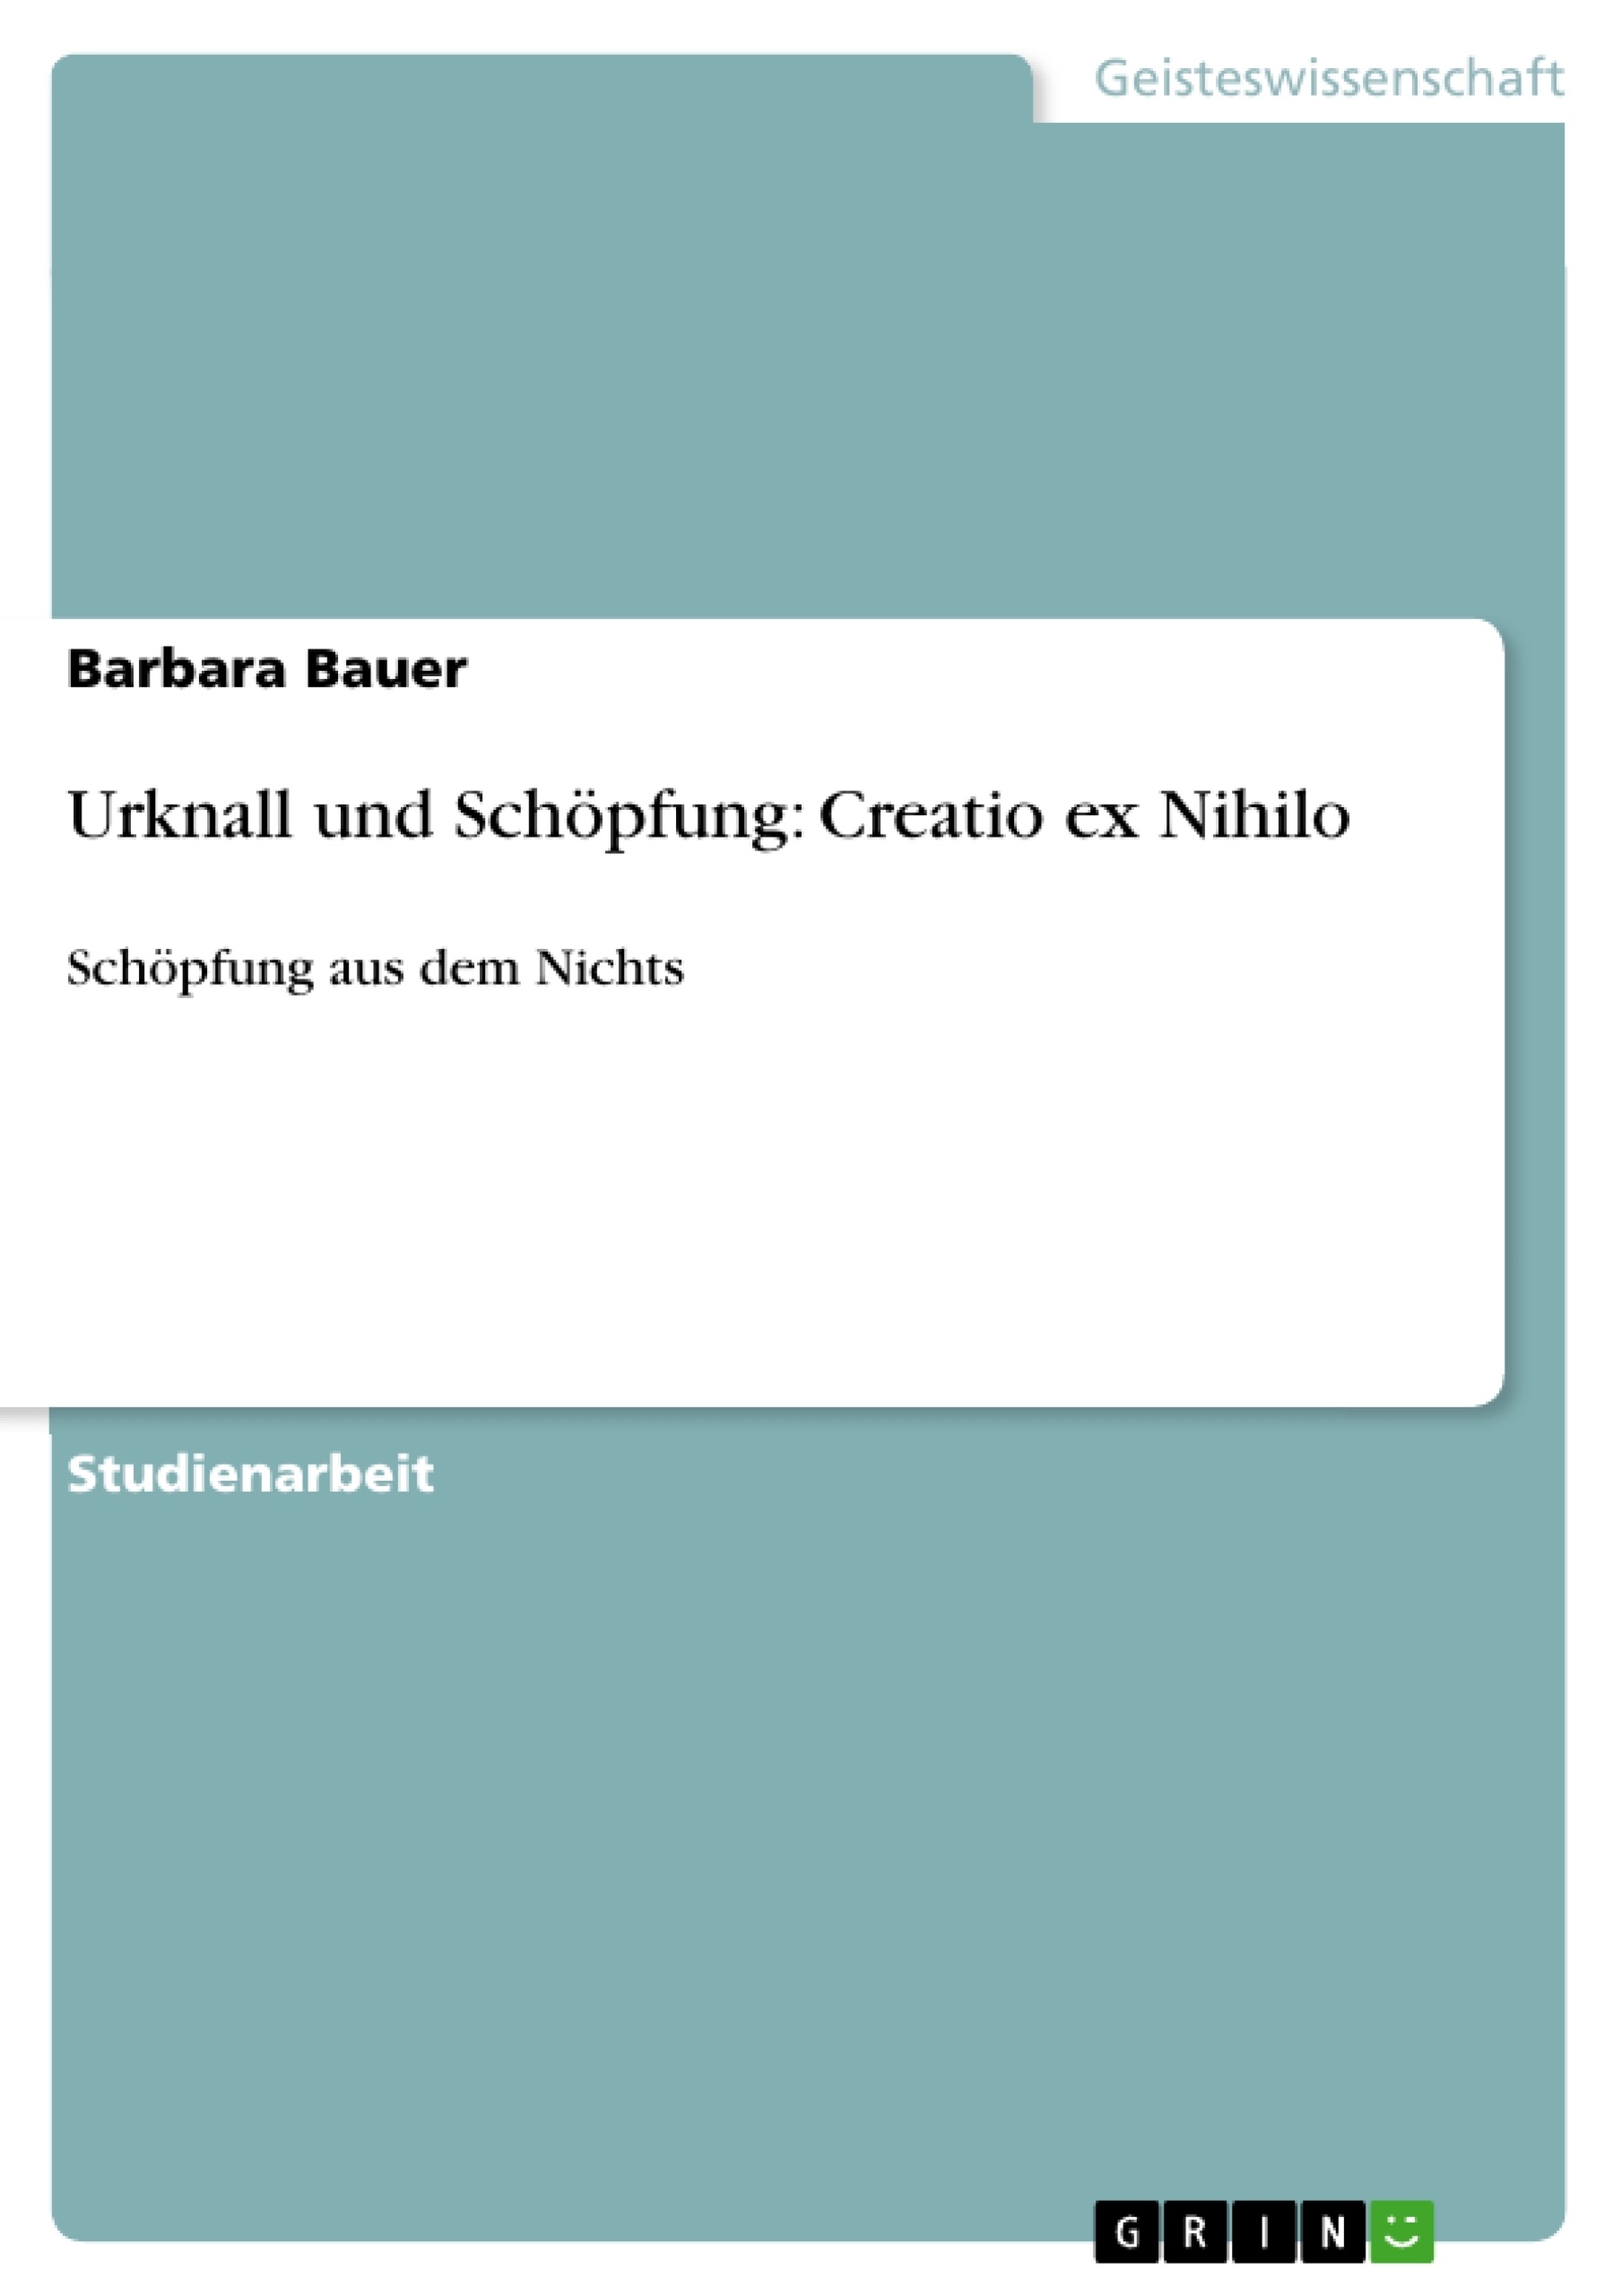 Title: Urknall und Schöpfung: Creatio ex Nihilo